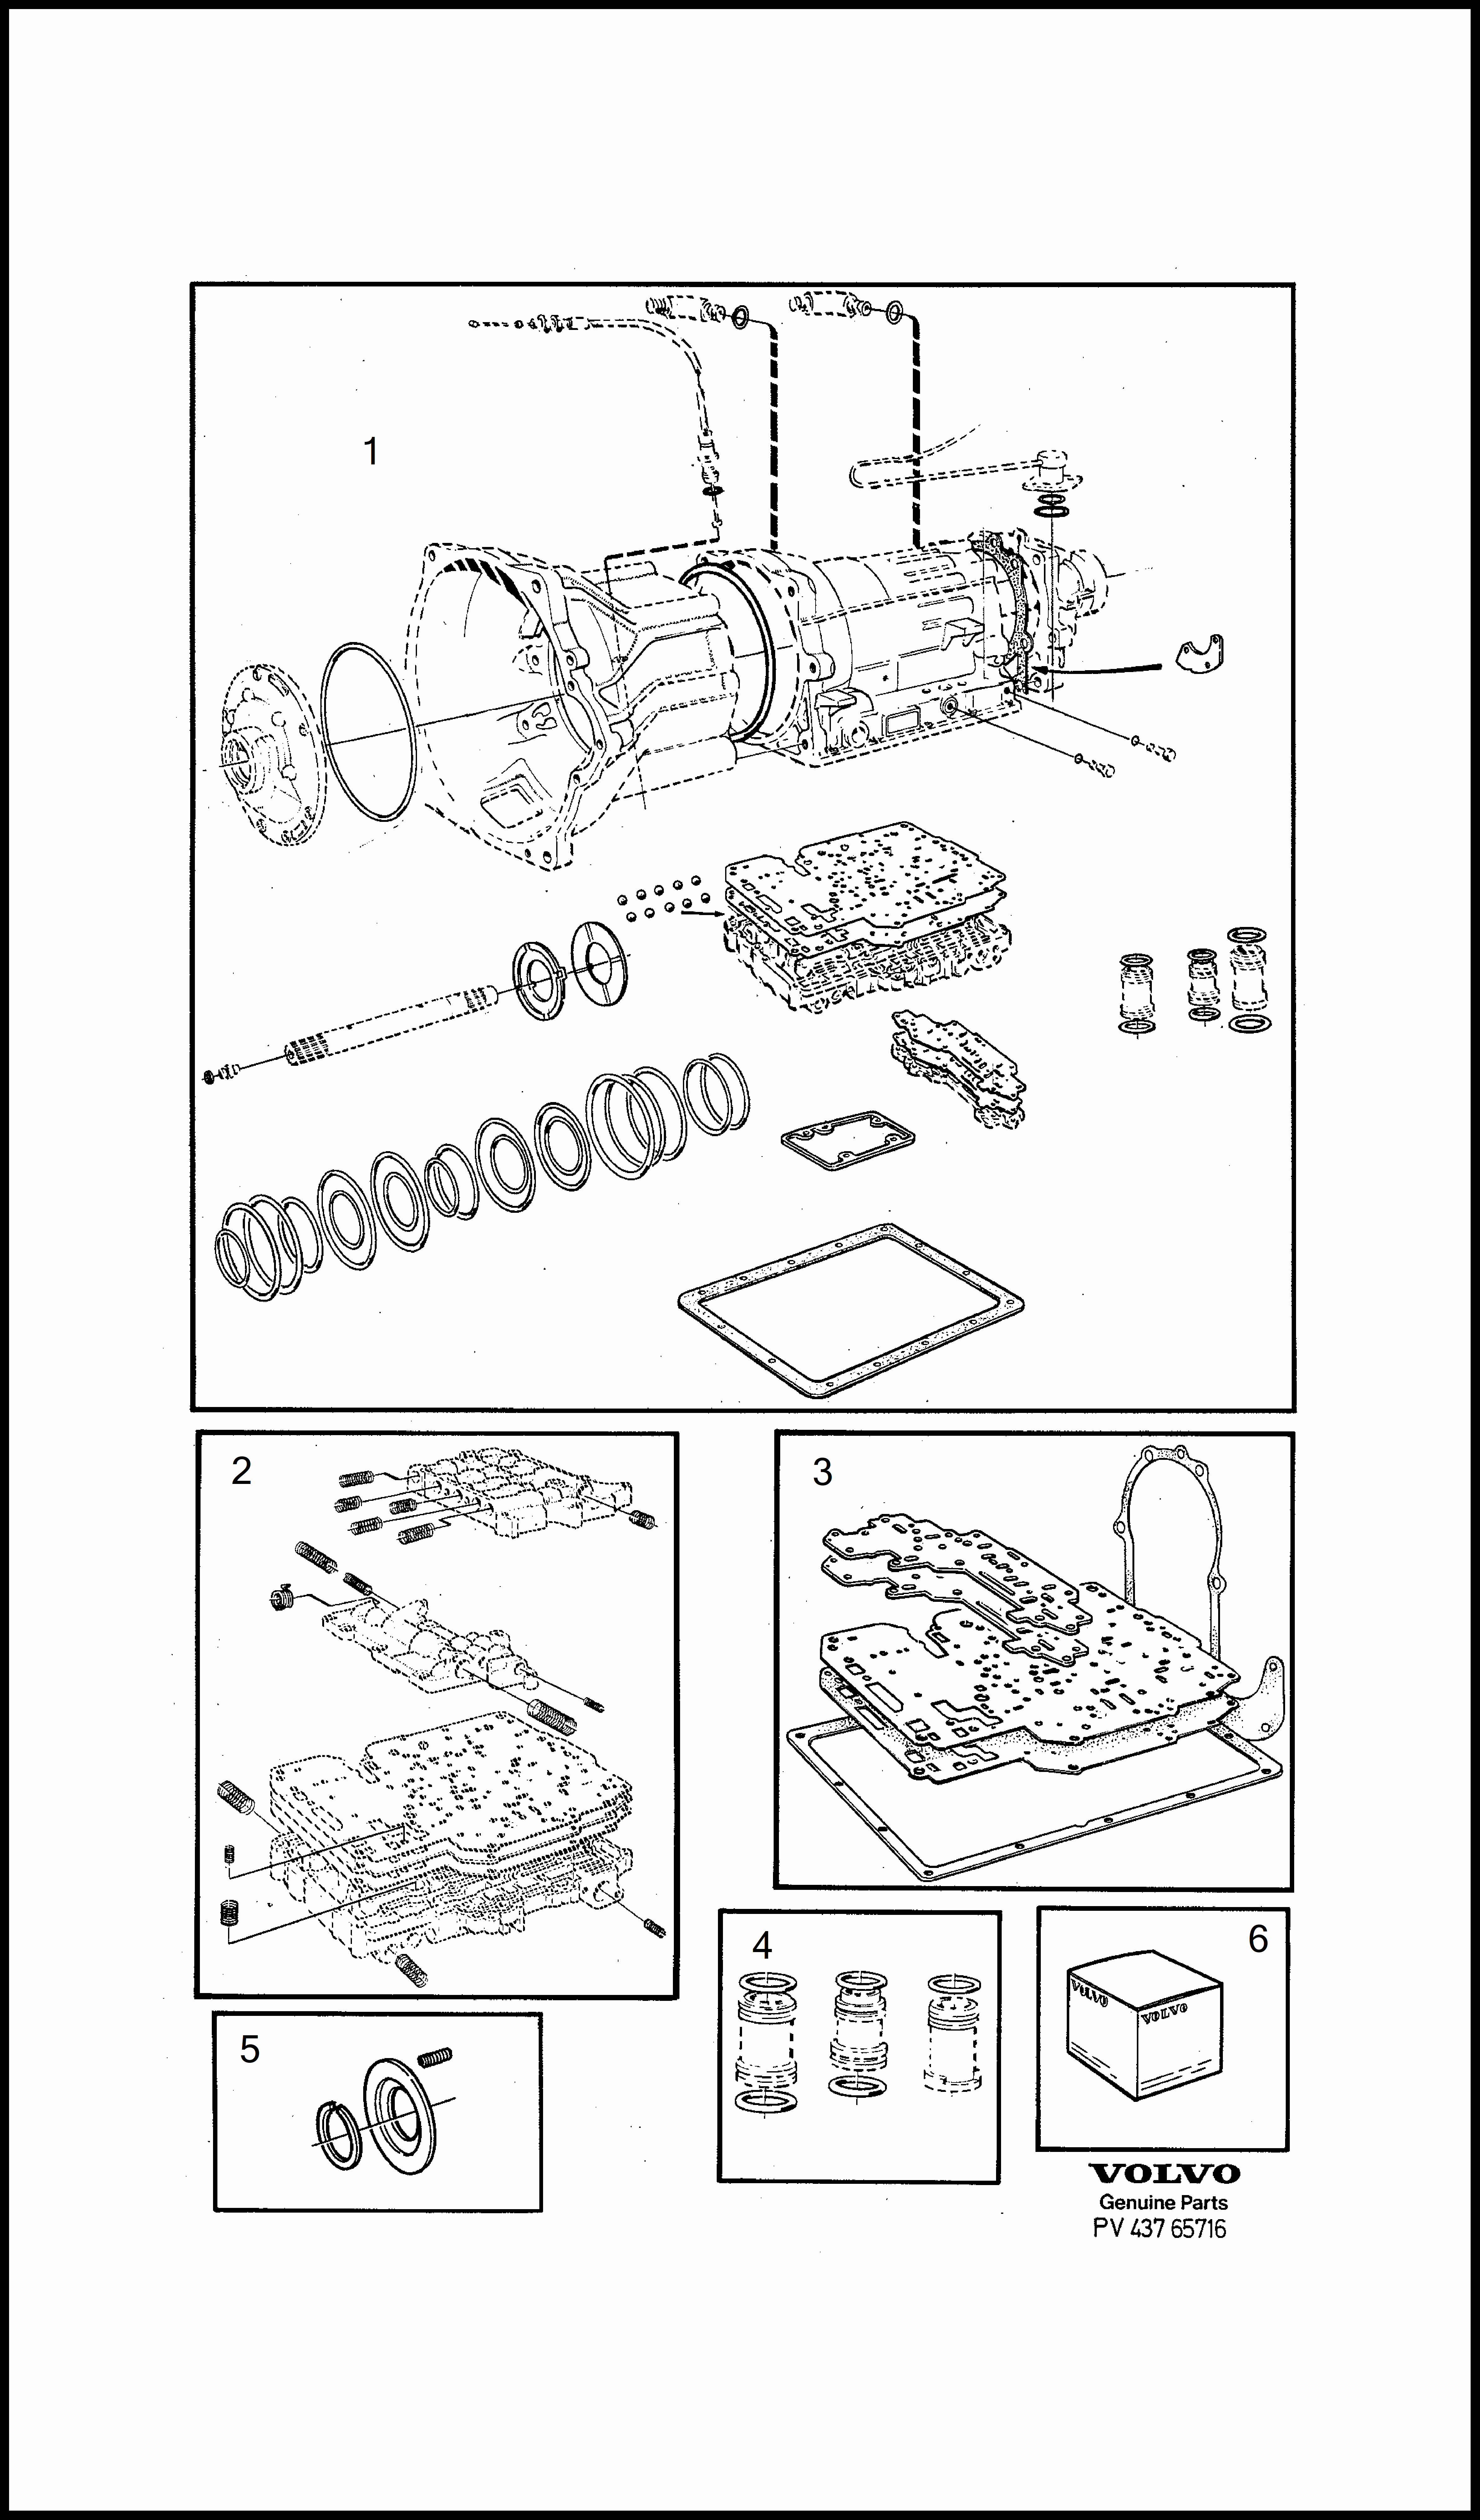 repair kits voor Volvo 240 240